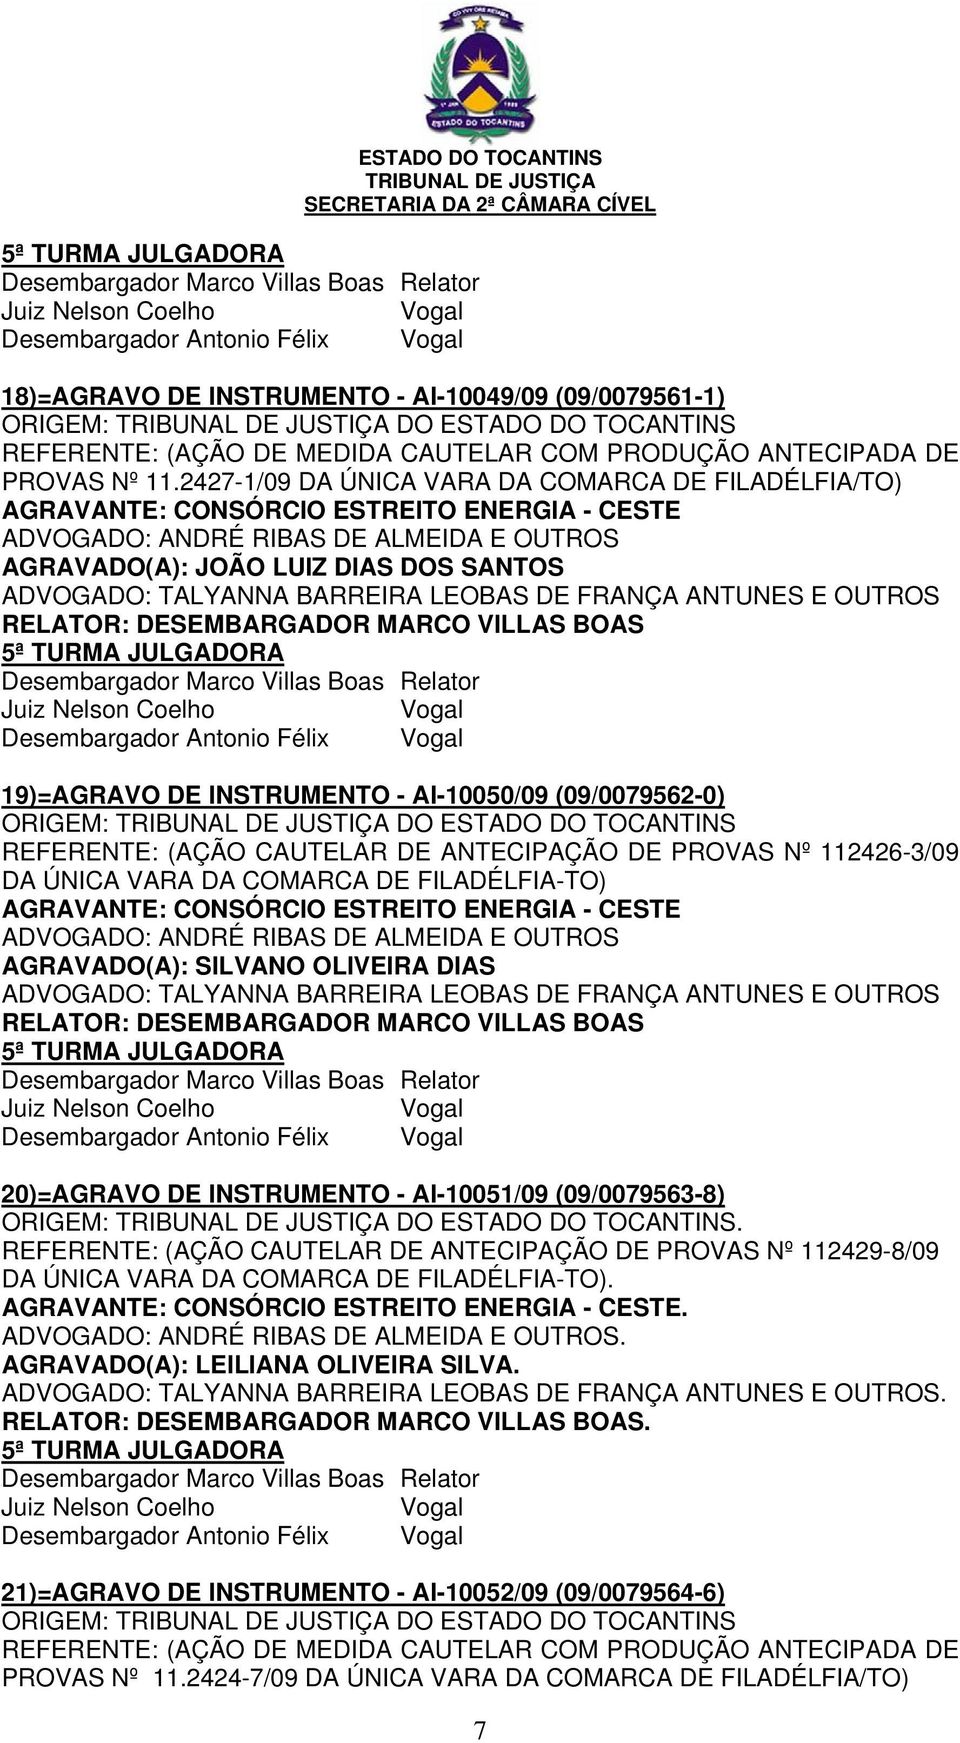 CAUTELAR DE ANTECIPAÇÃO DE PROVAS Nº 112426-3/09 DA ÚNICA VARA DA COMARCA DE FILADÉLFIA-TO) AGRAVADO(A): SILVANO OLIVEIRA DIAS Desembargador Antonio Félix 20)=AGRAVO DE INSTRUMENTO - AI-10051/09